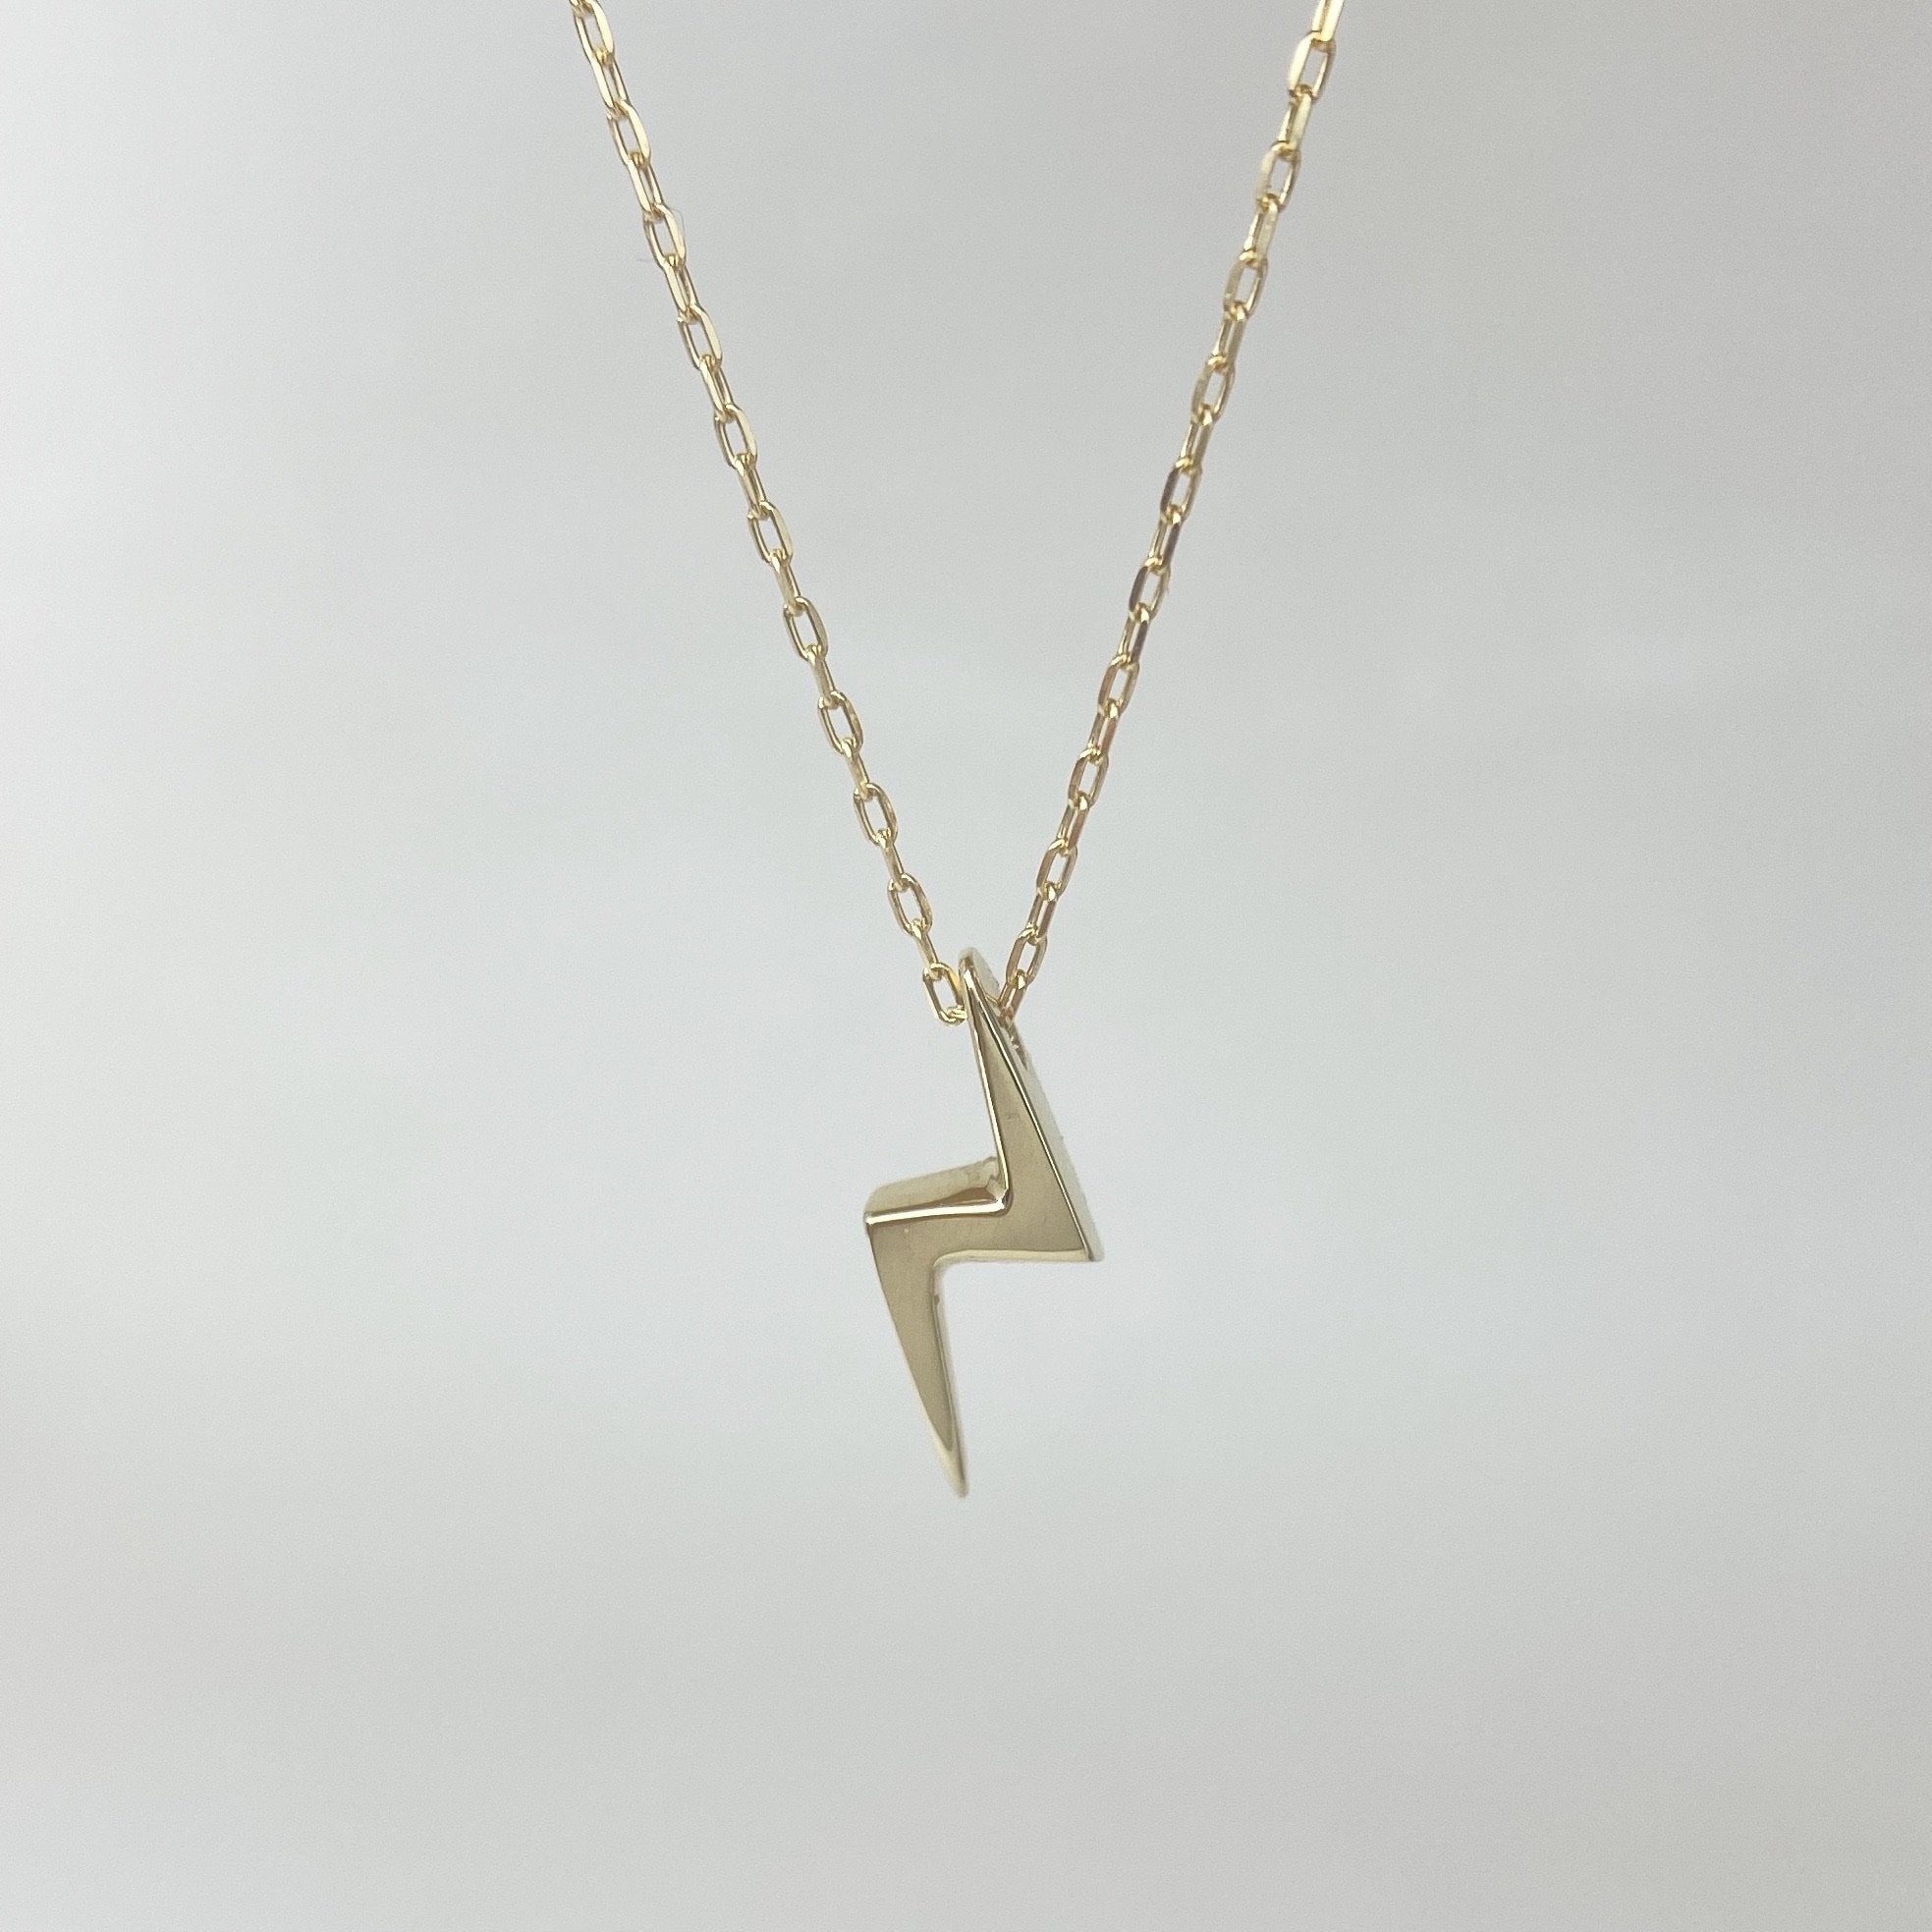 N-like Shaped Lightning Bolt Gold Necklace (18k)